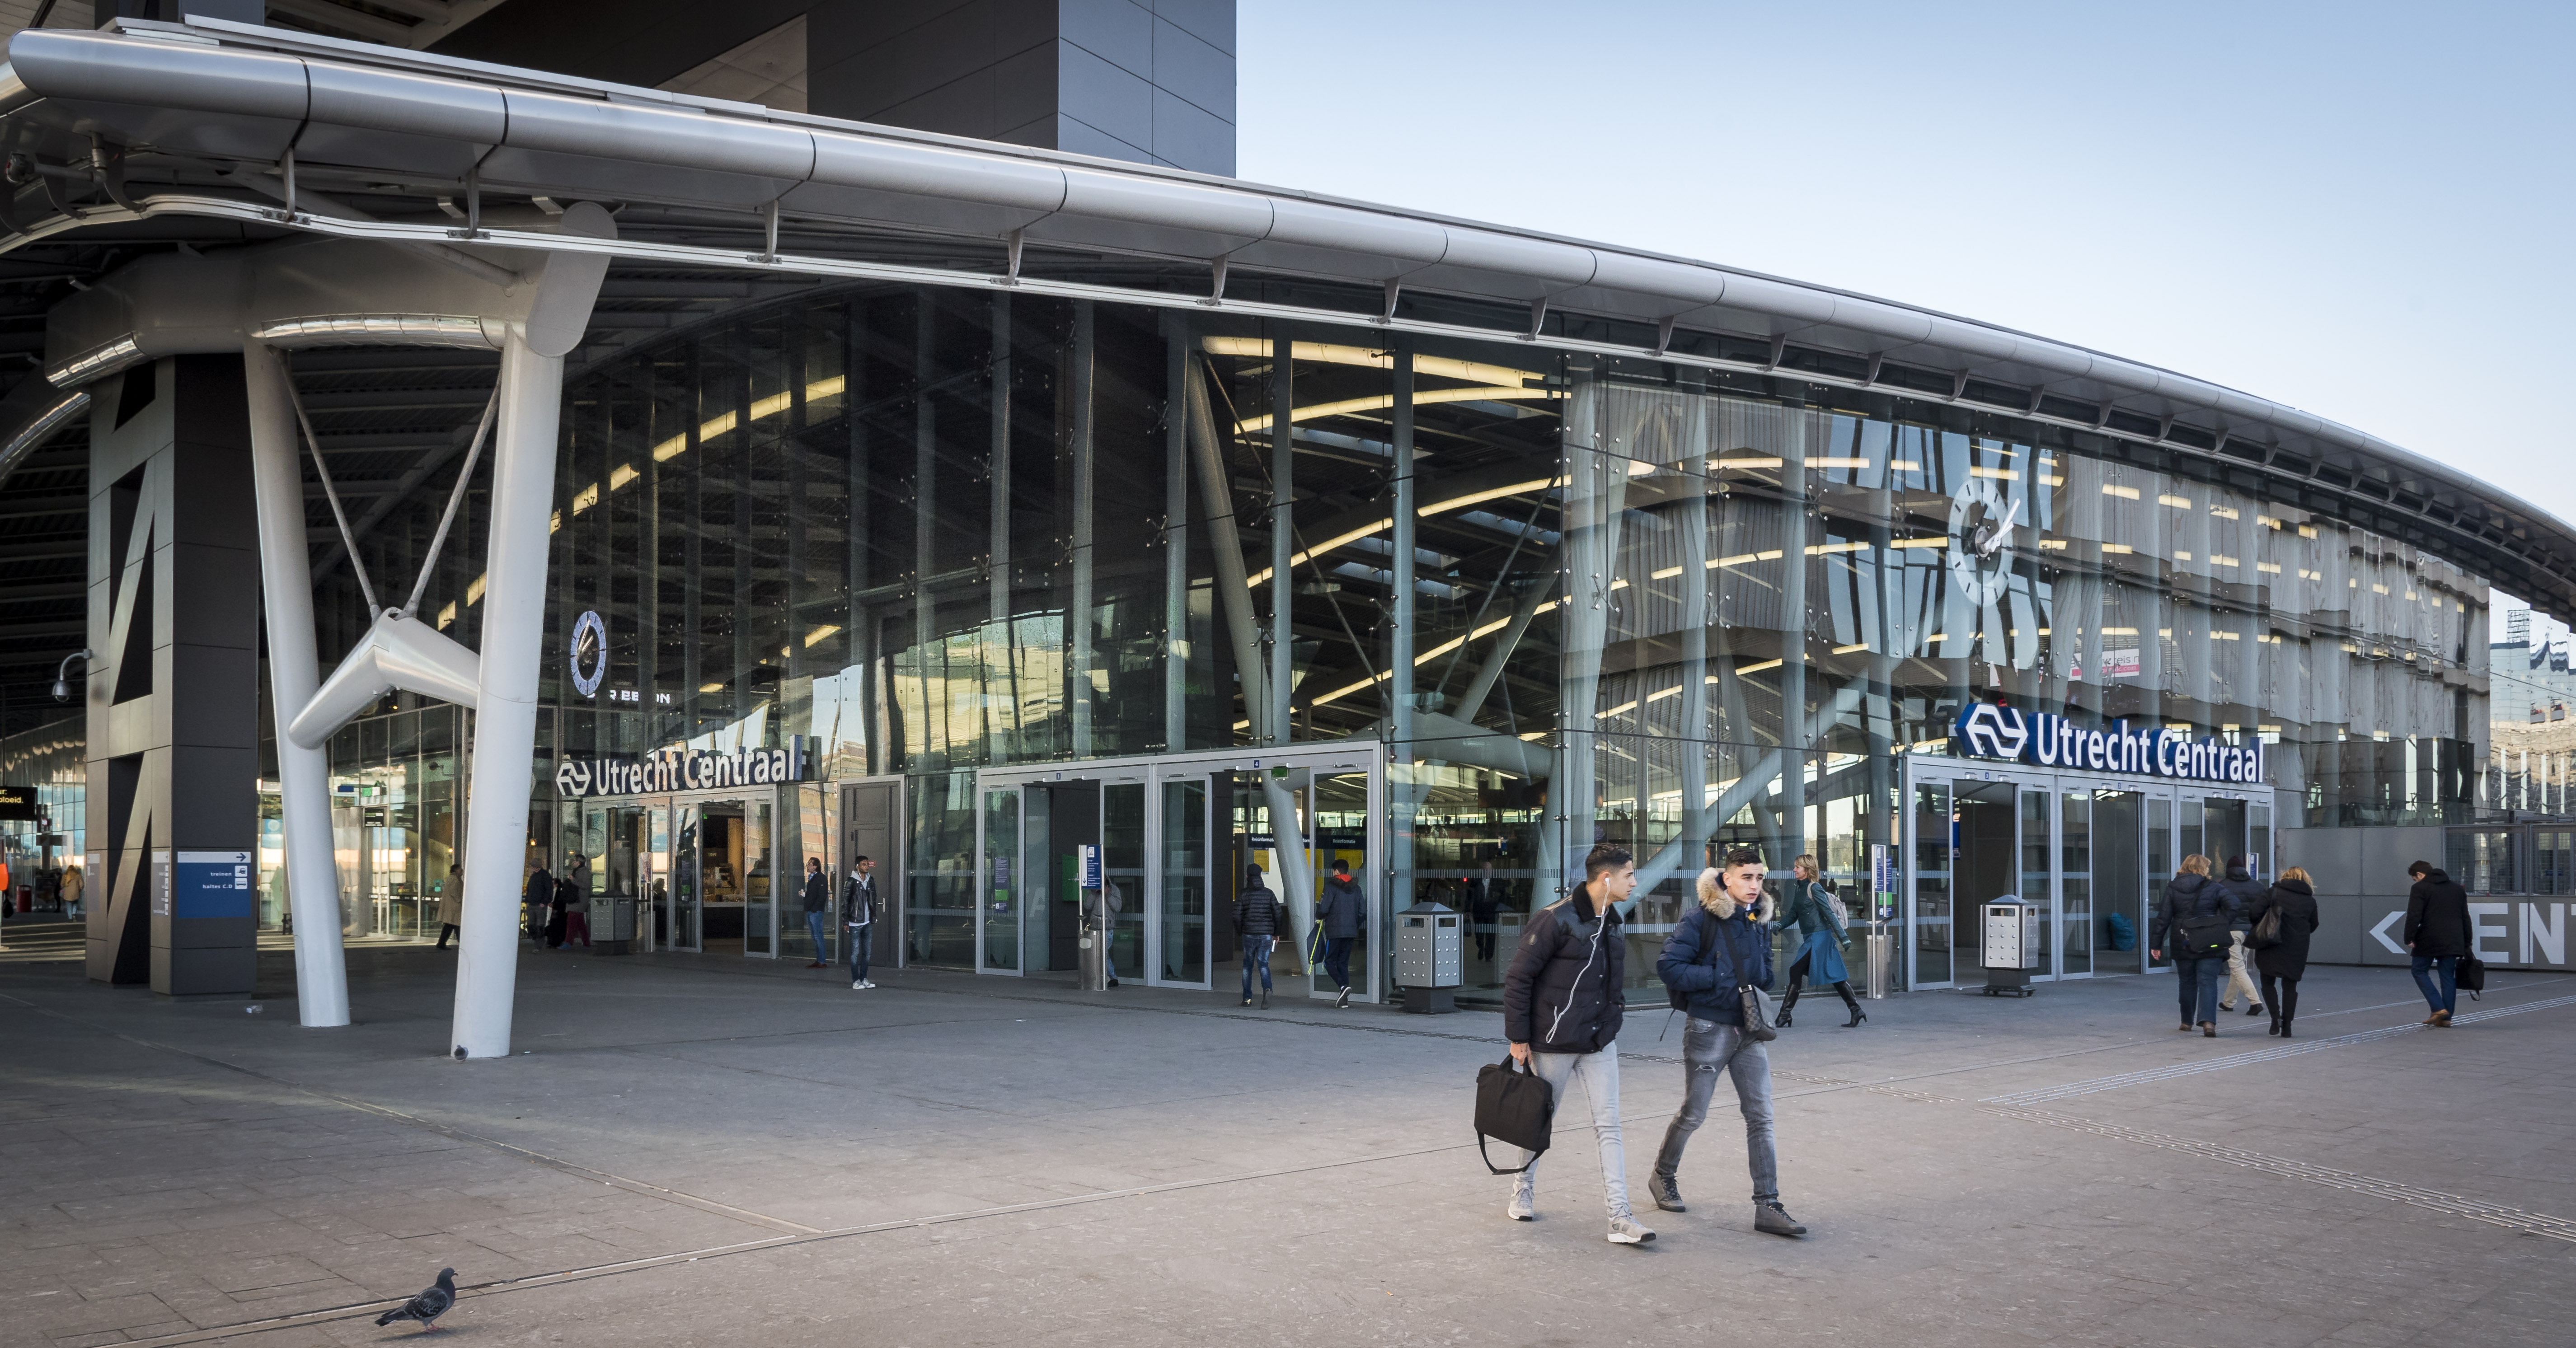 2016-11-29 14:43:55 UTRECHT - De nieuwe stationshal van Utrecht Centraal. Aan de verbouwing van het drukste station van Nederland is sinds 2013 gewerkt. ANP LEX VAN LIESHOUT